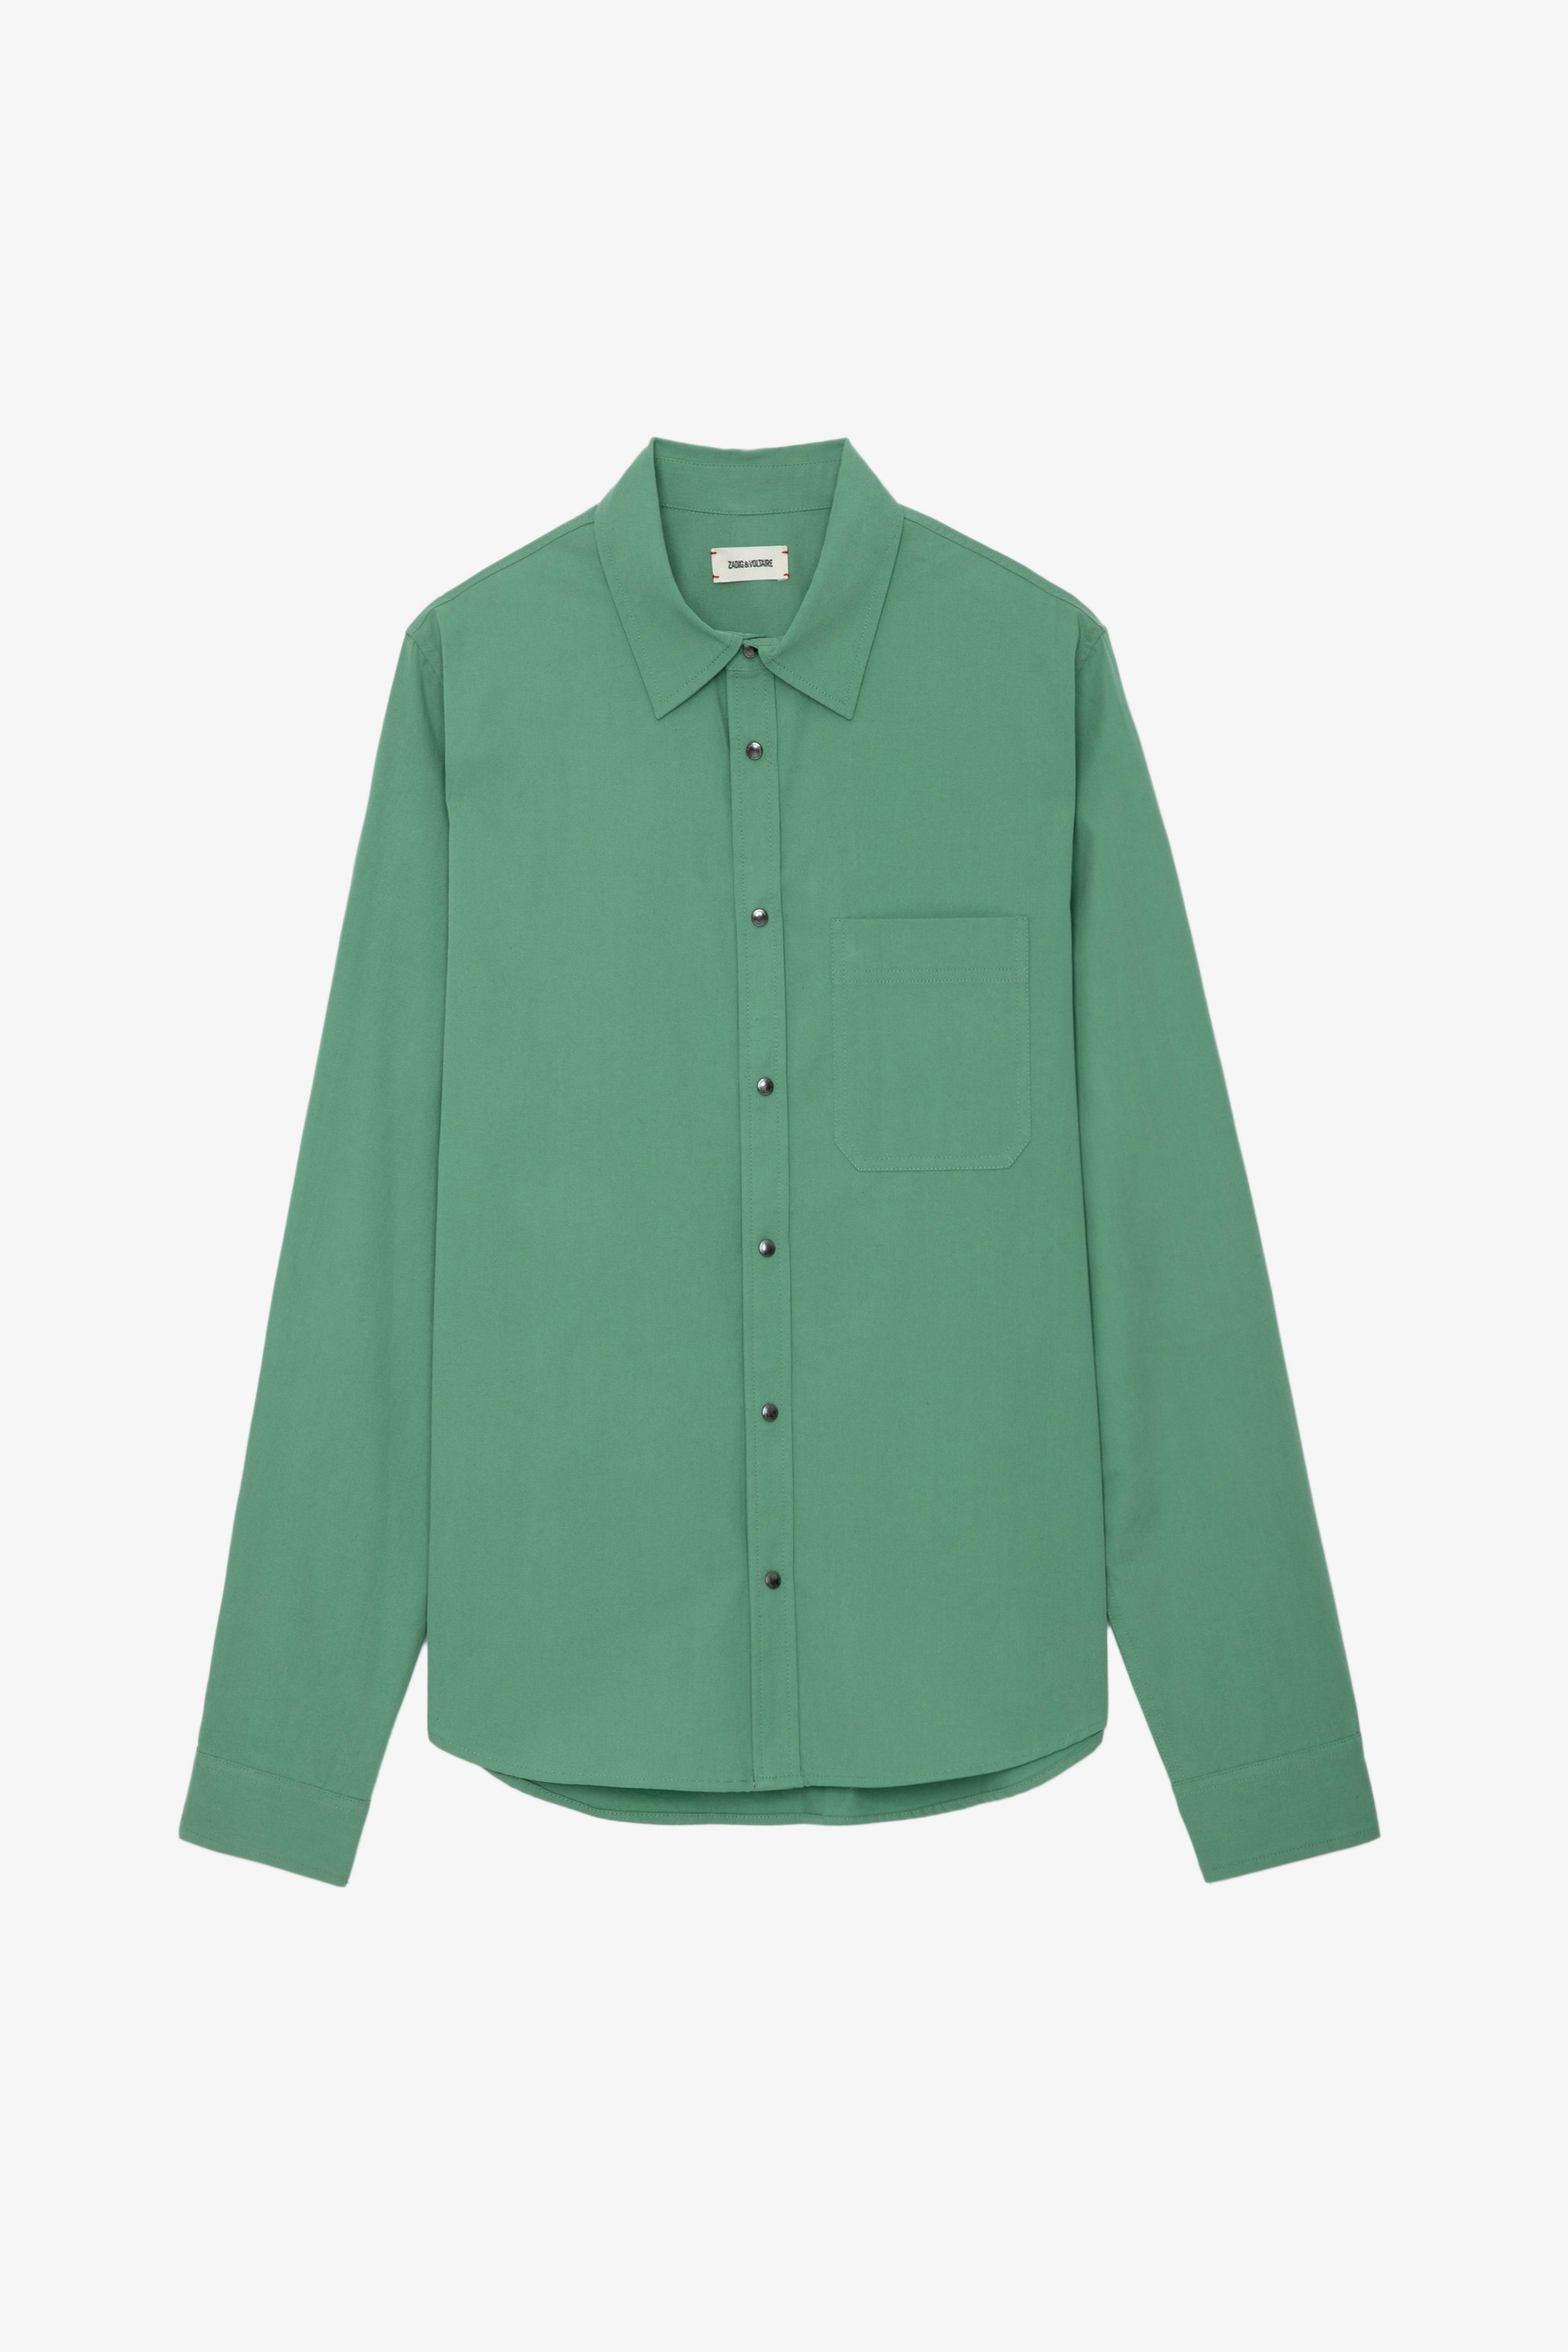 Chemise Stan - Chemise en twill de coton verte, poche plaquée et customisations au dos créées par Humberto Cruz.